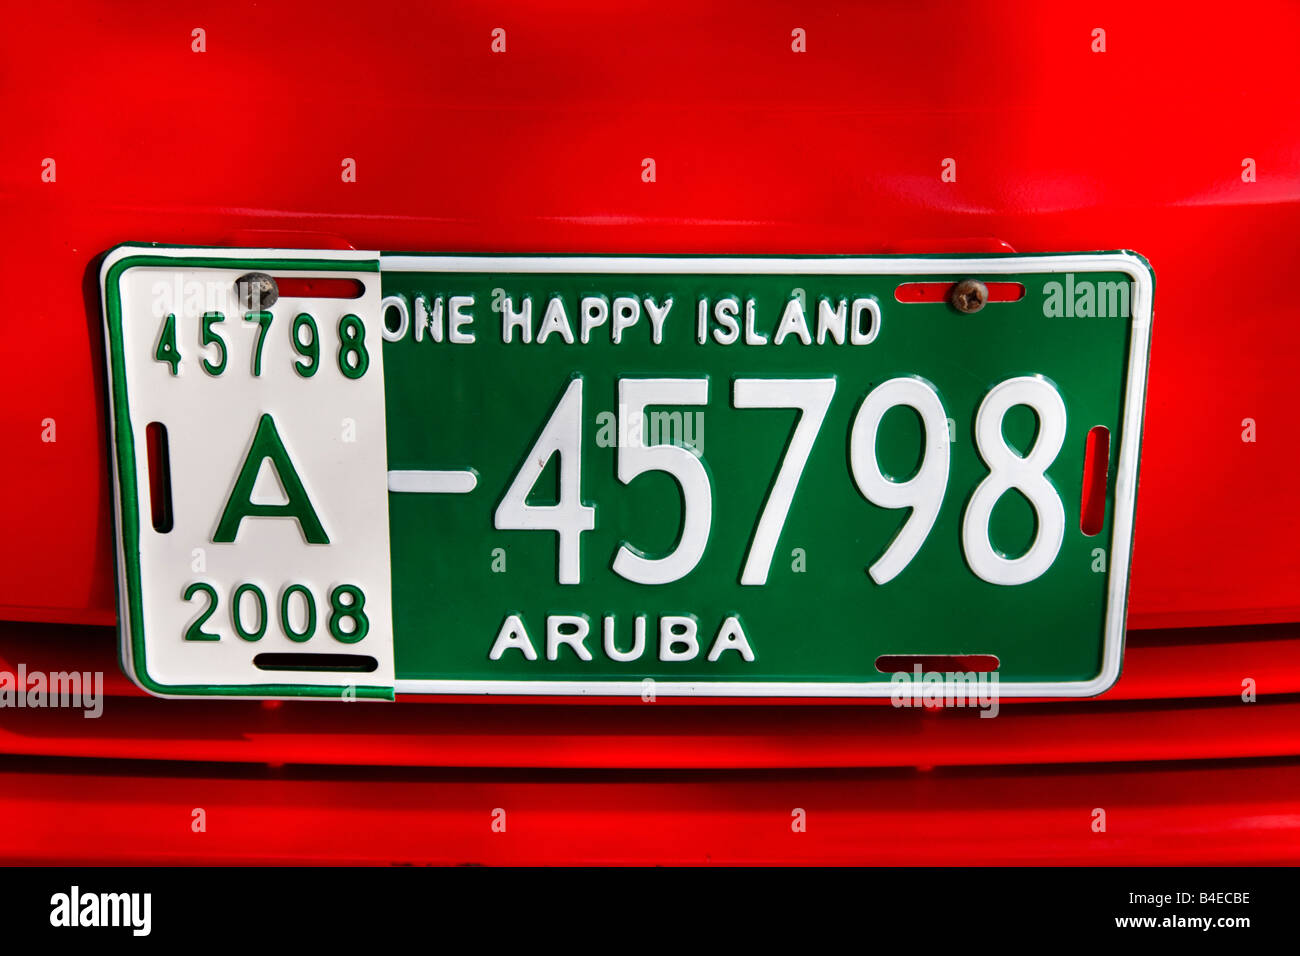 West Indies Aruba Nummer Platte eine glückliche Insel Stockfoto